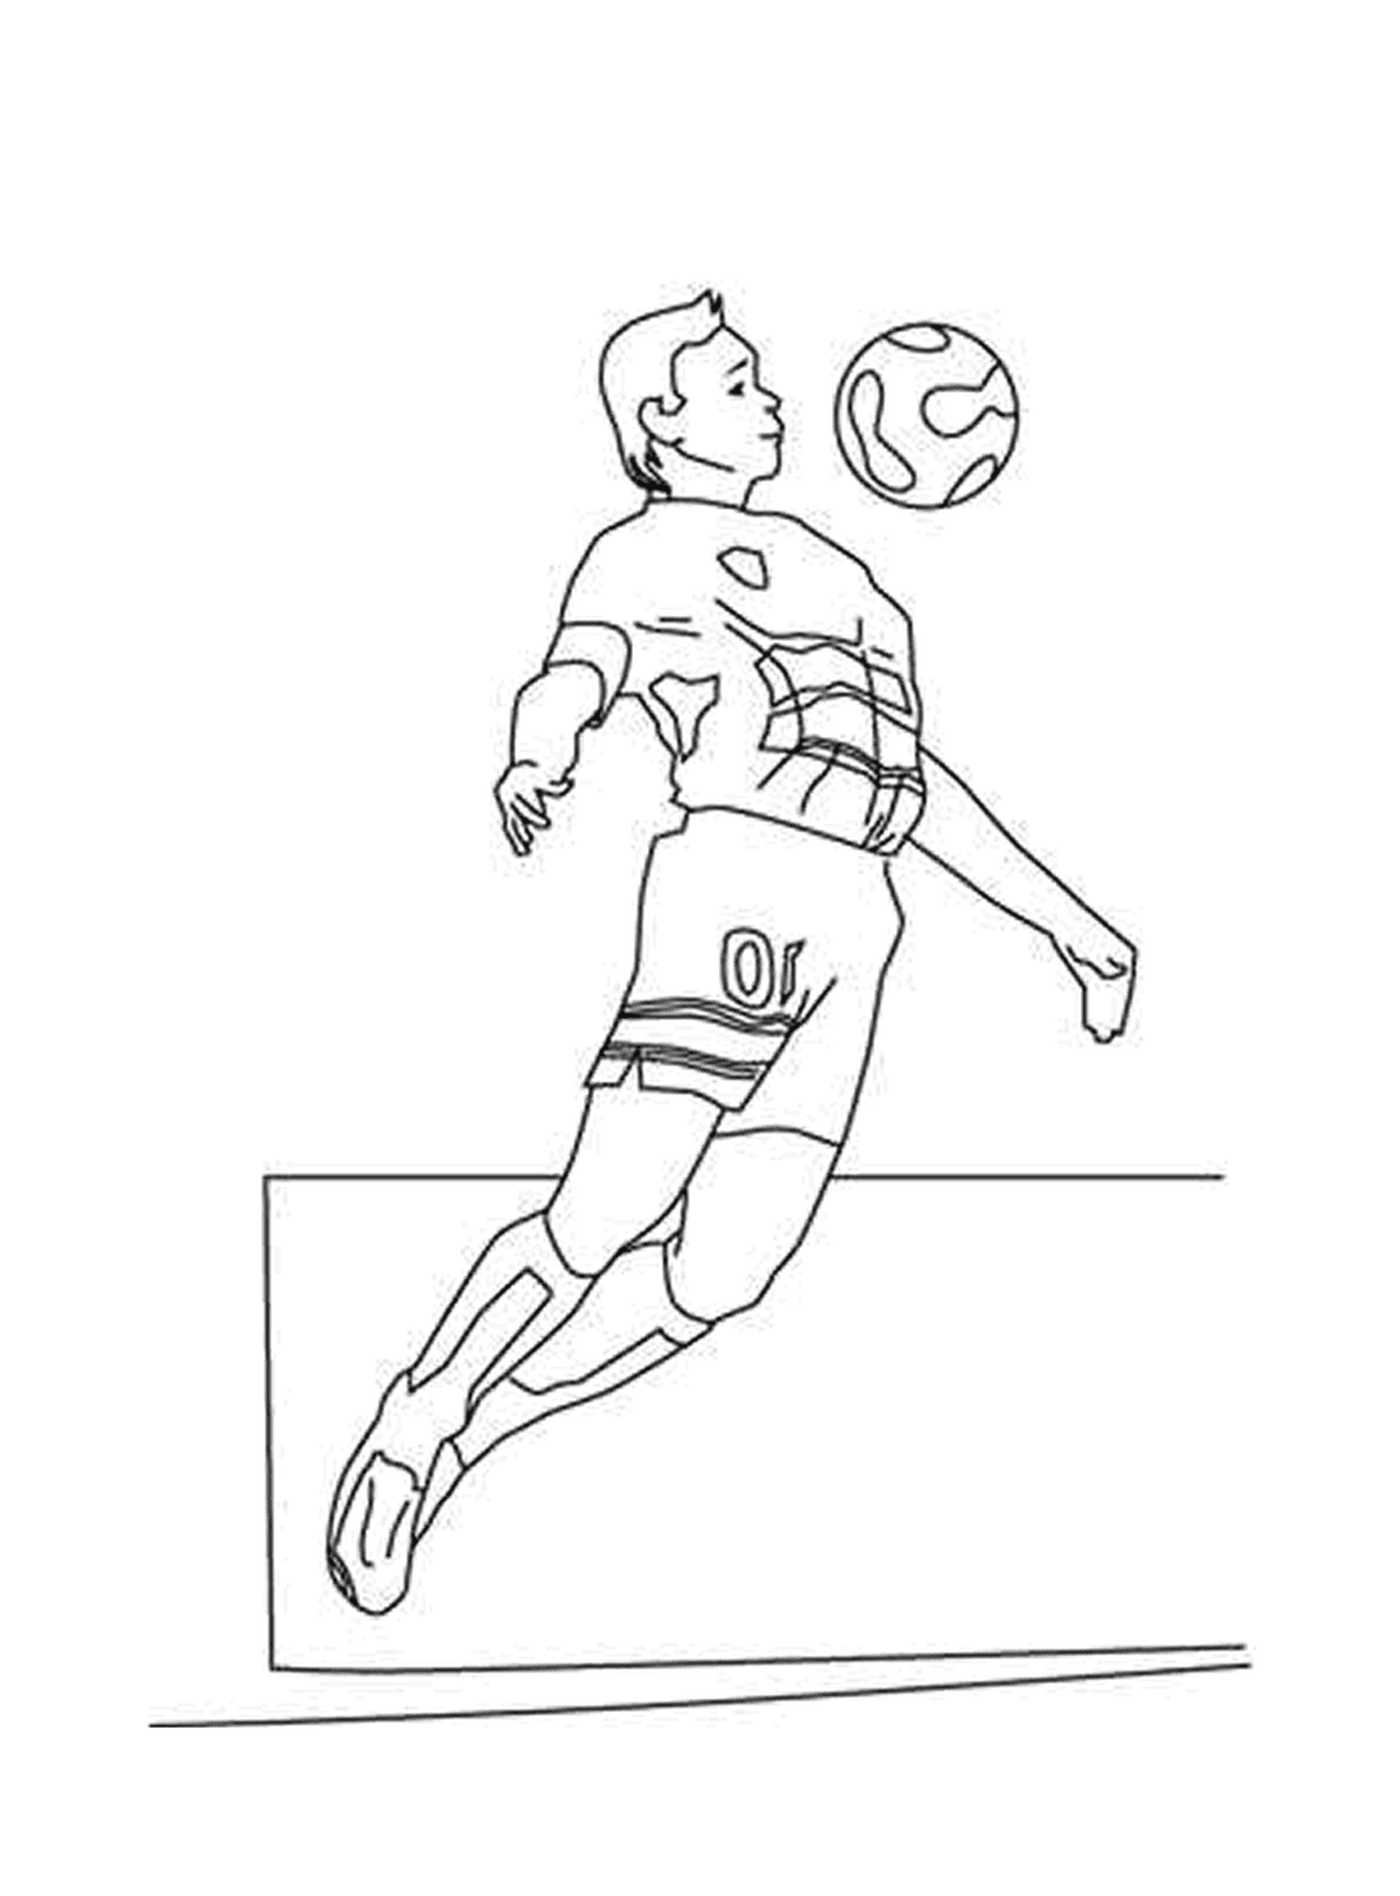  A footballer with a ball 